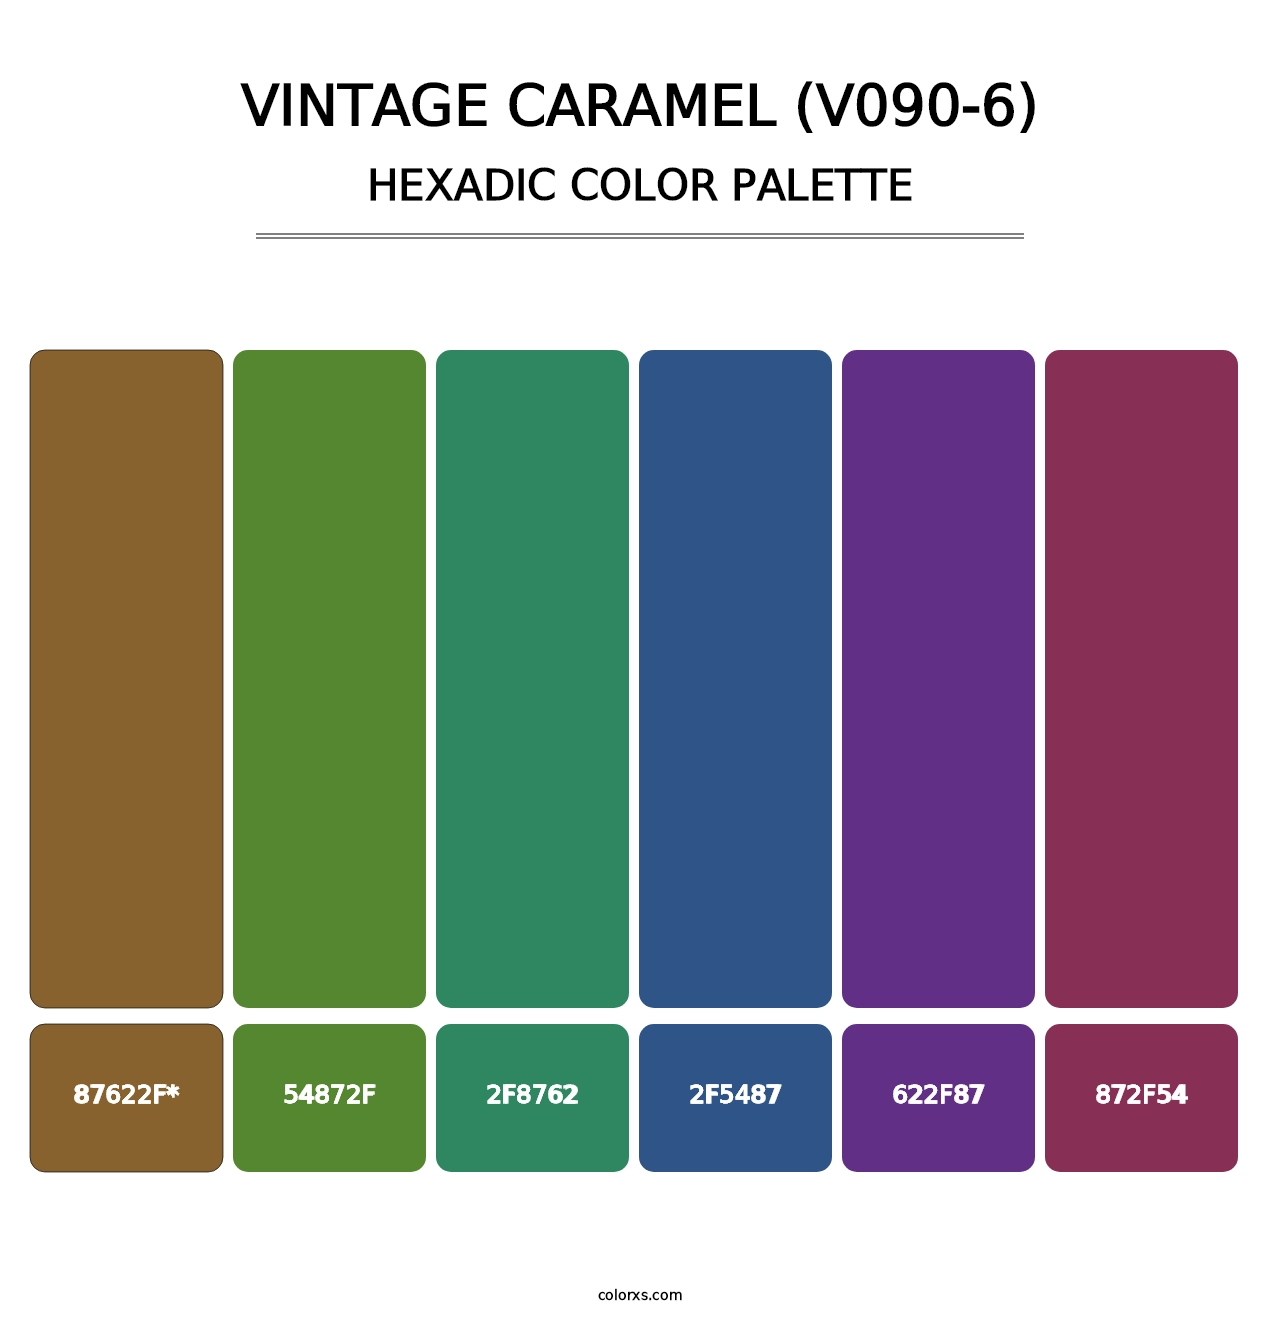 Vintage Caramel (V090-6) - Hexadic Color Palette